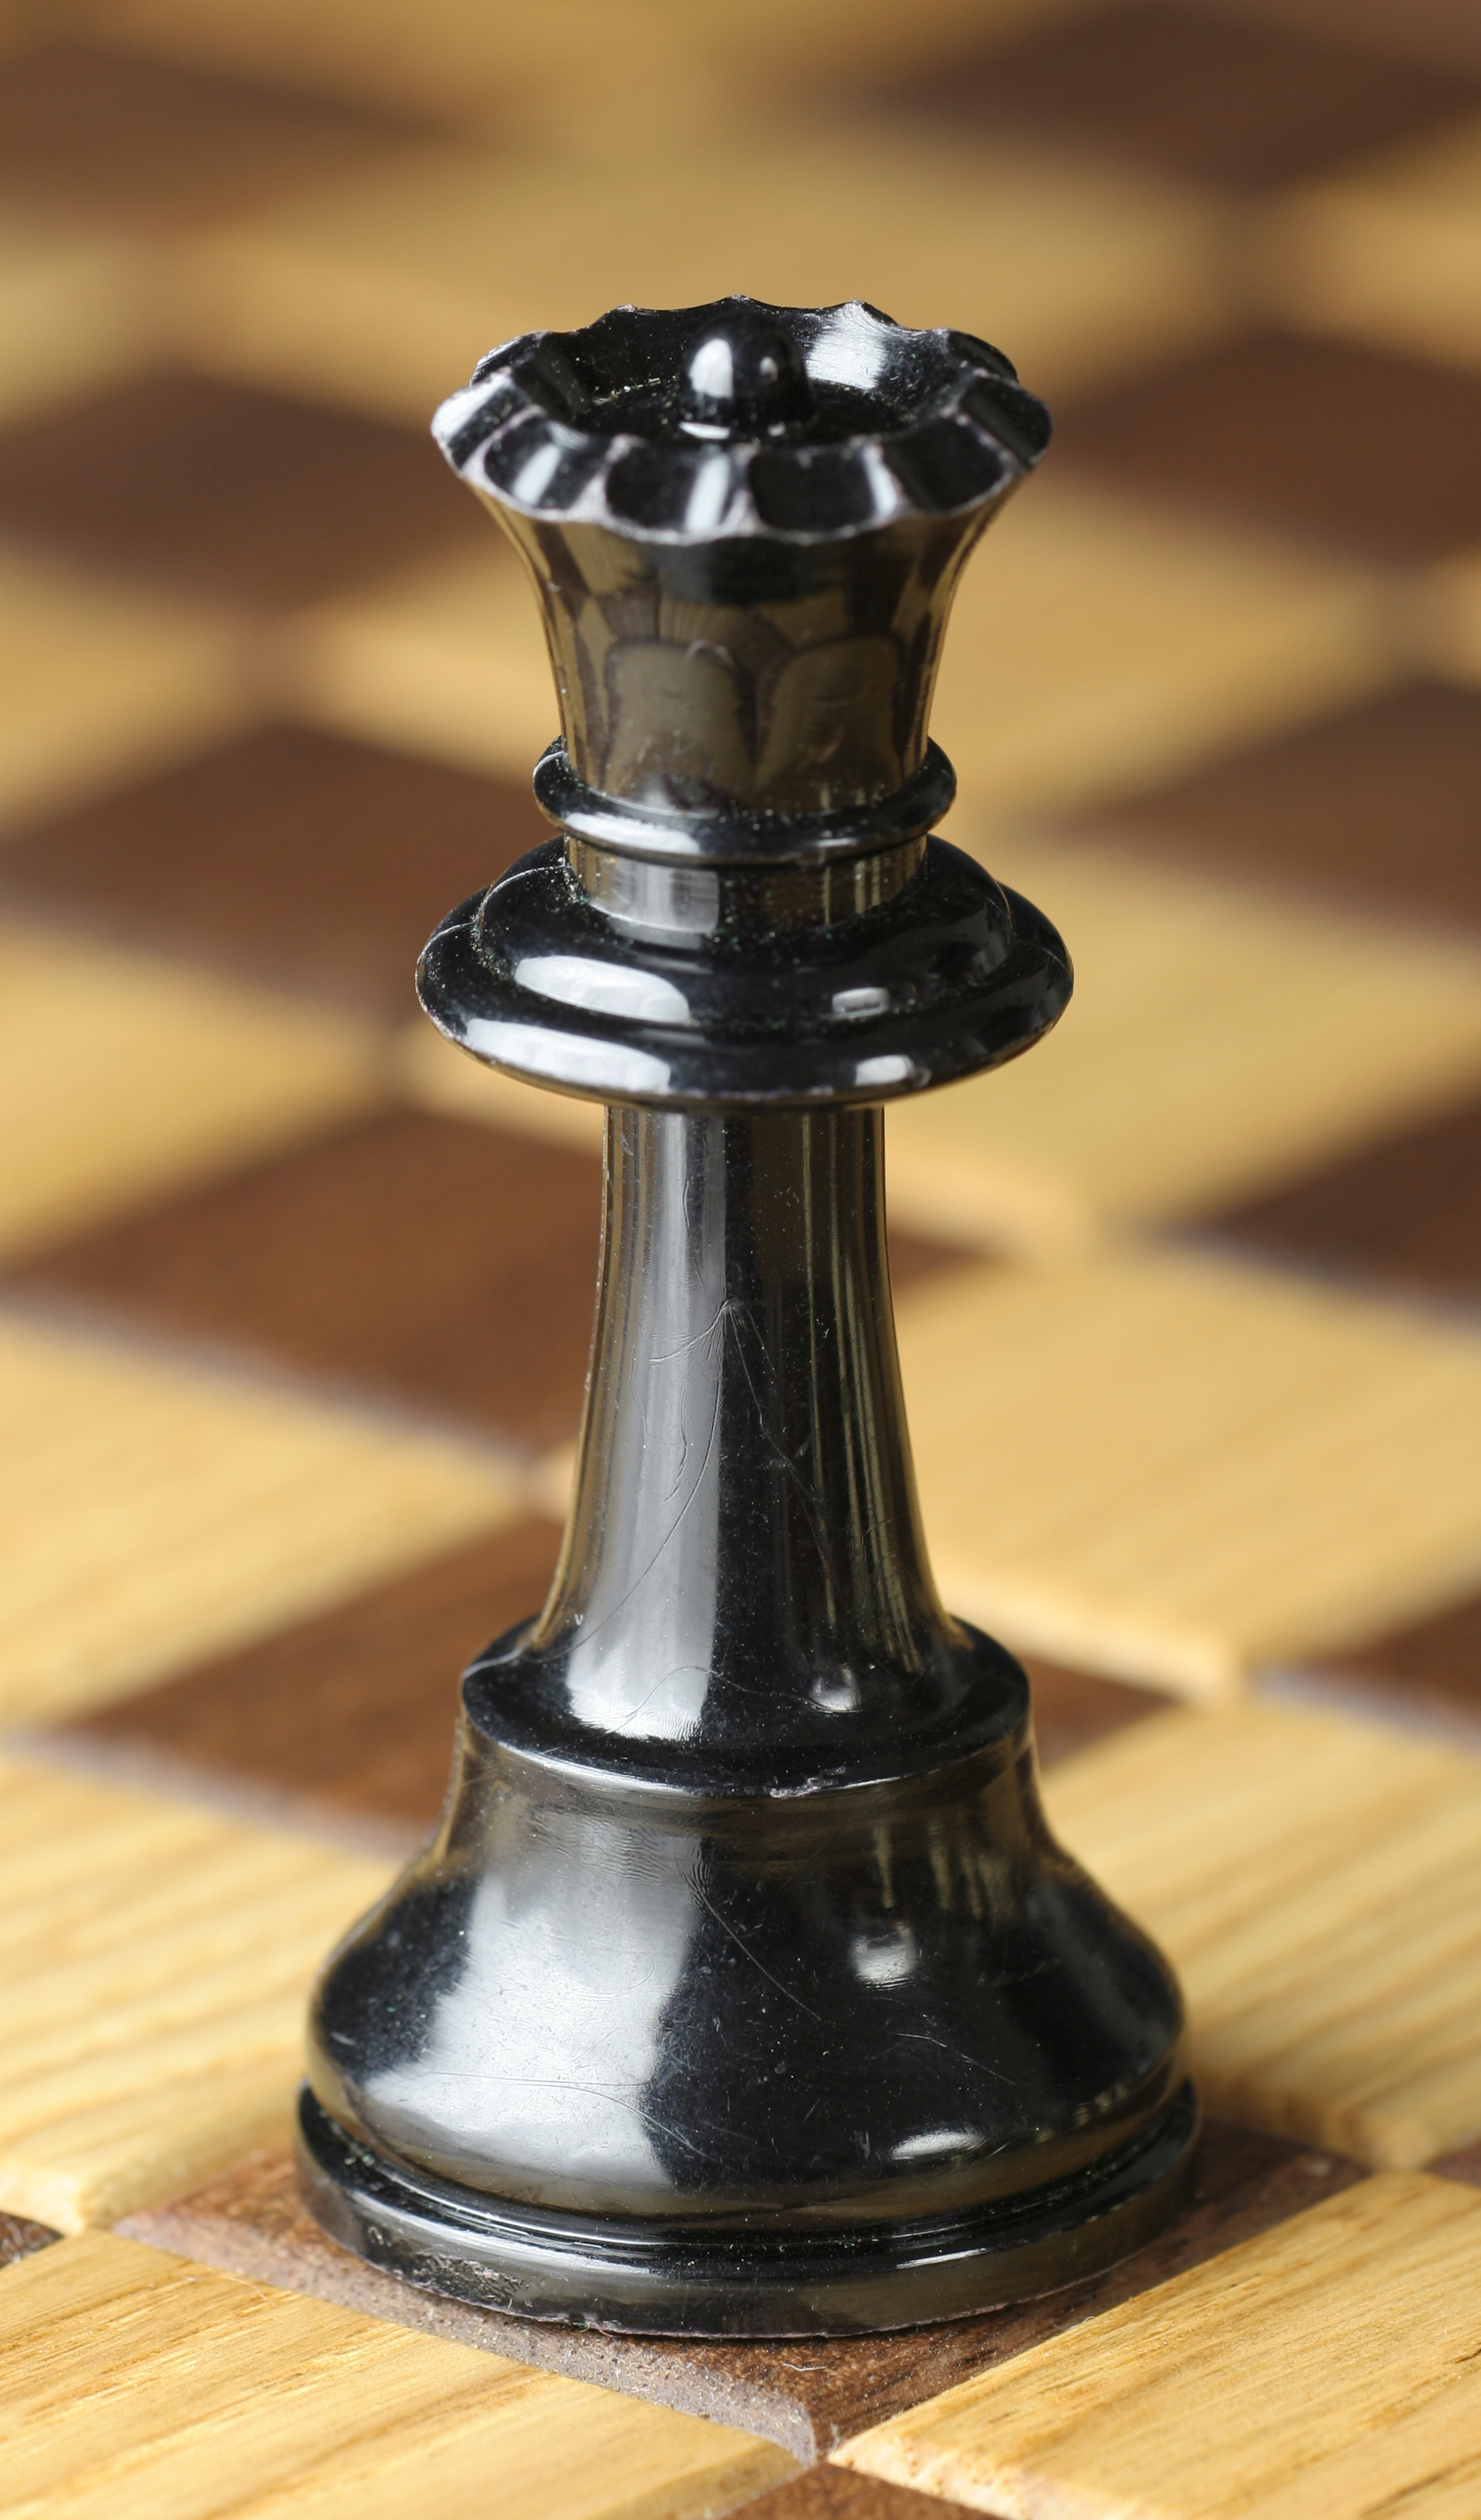 imagem da peça rainha, do jogo de xadrez, do site http://pl.wikipedia.org/wiki/Hetman_(szachy)